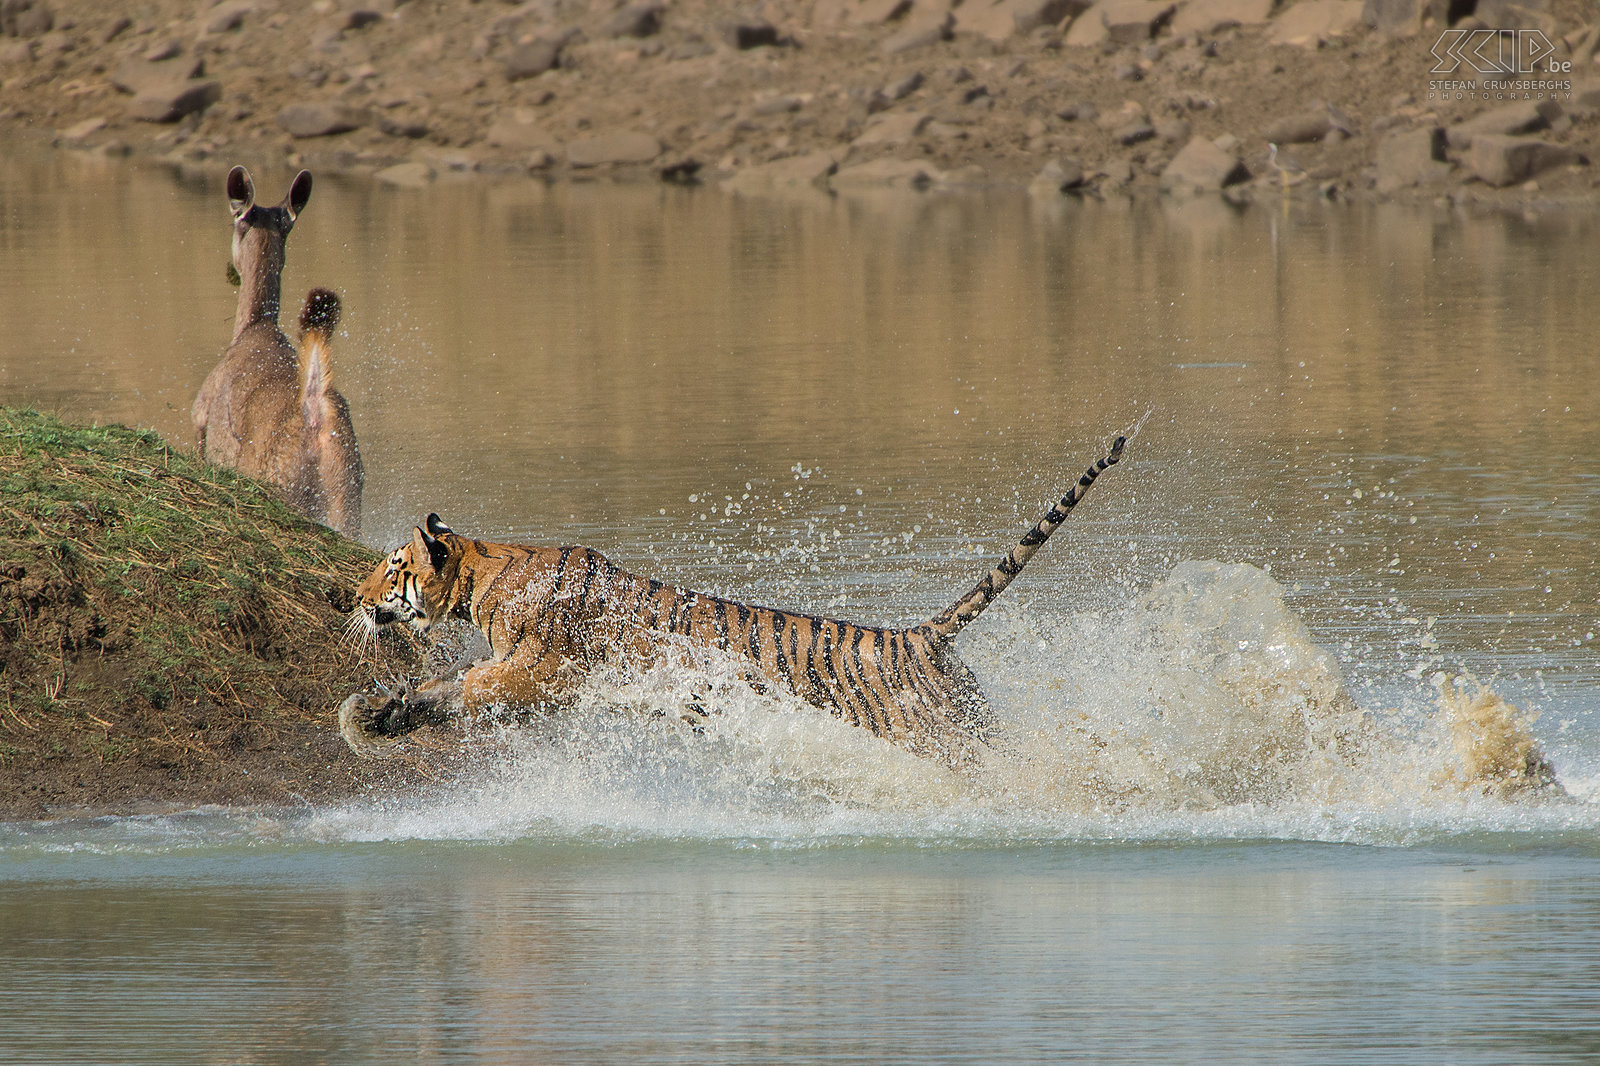 Tadoba - Tijger aanval De tijgerin kon geen hert vangen maar het was ongelooflijk om dit indrukwekkende dier in actie te zien. Maar het kippenvelmoment was nog niet gedaan ... Stefan Cruysberghs